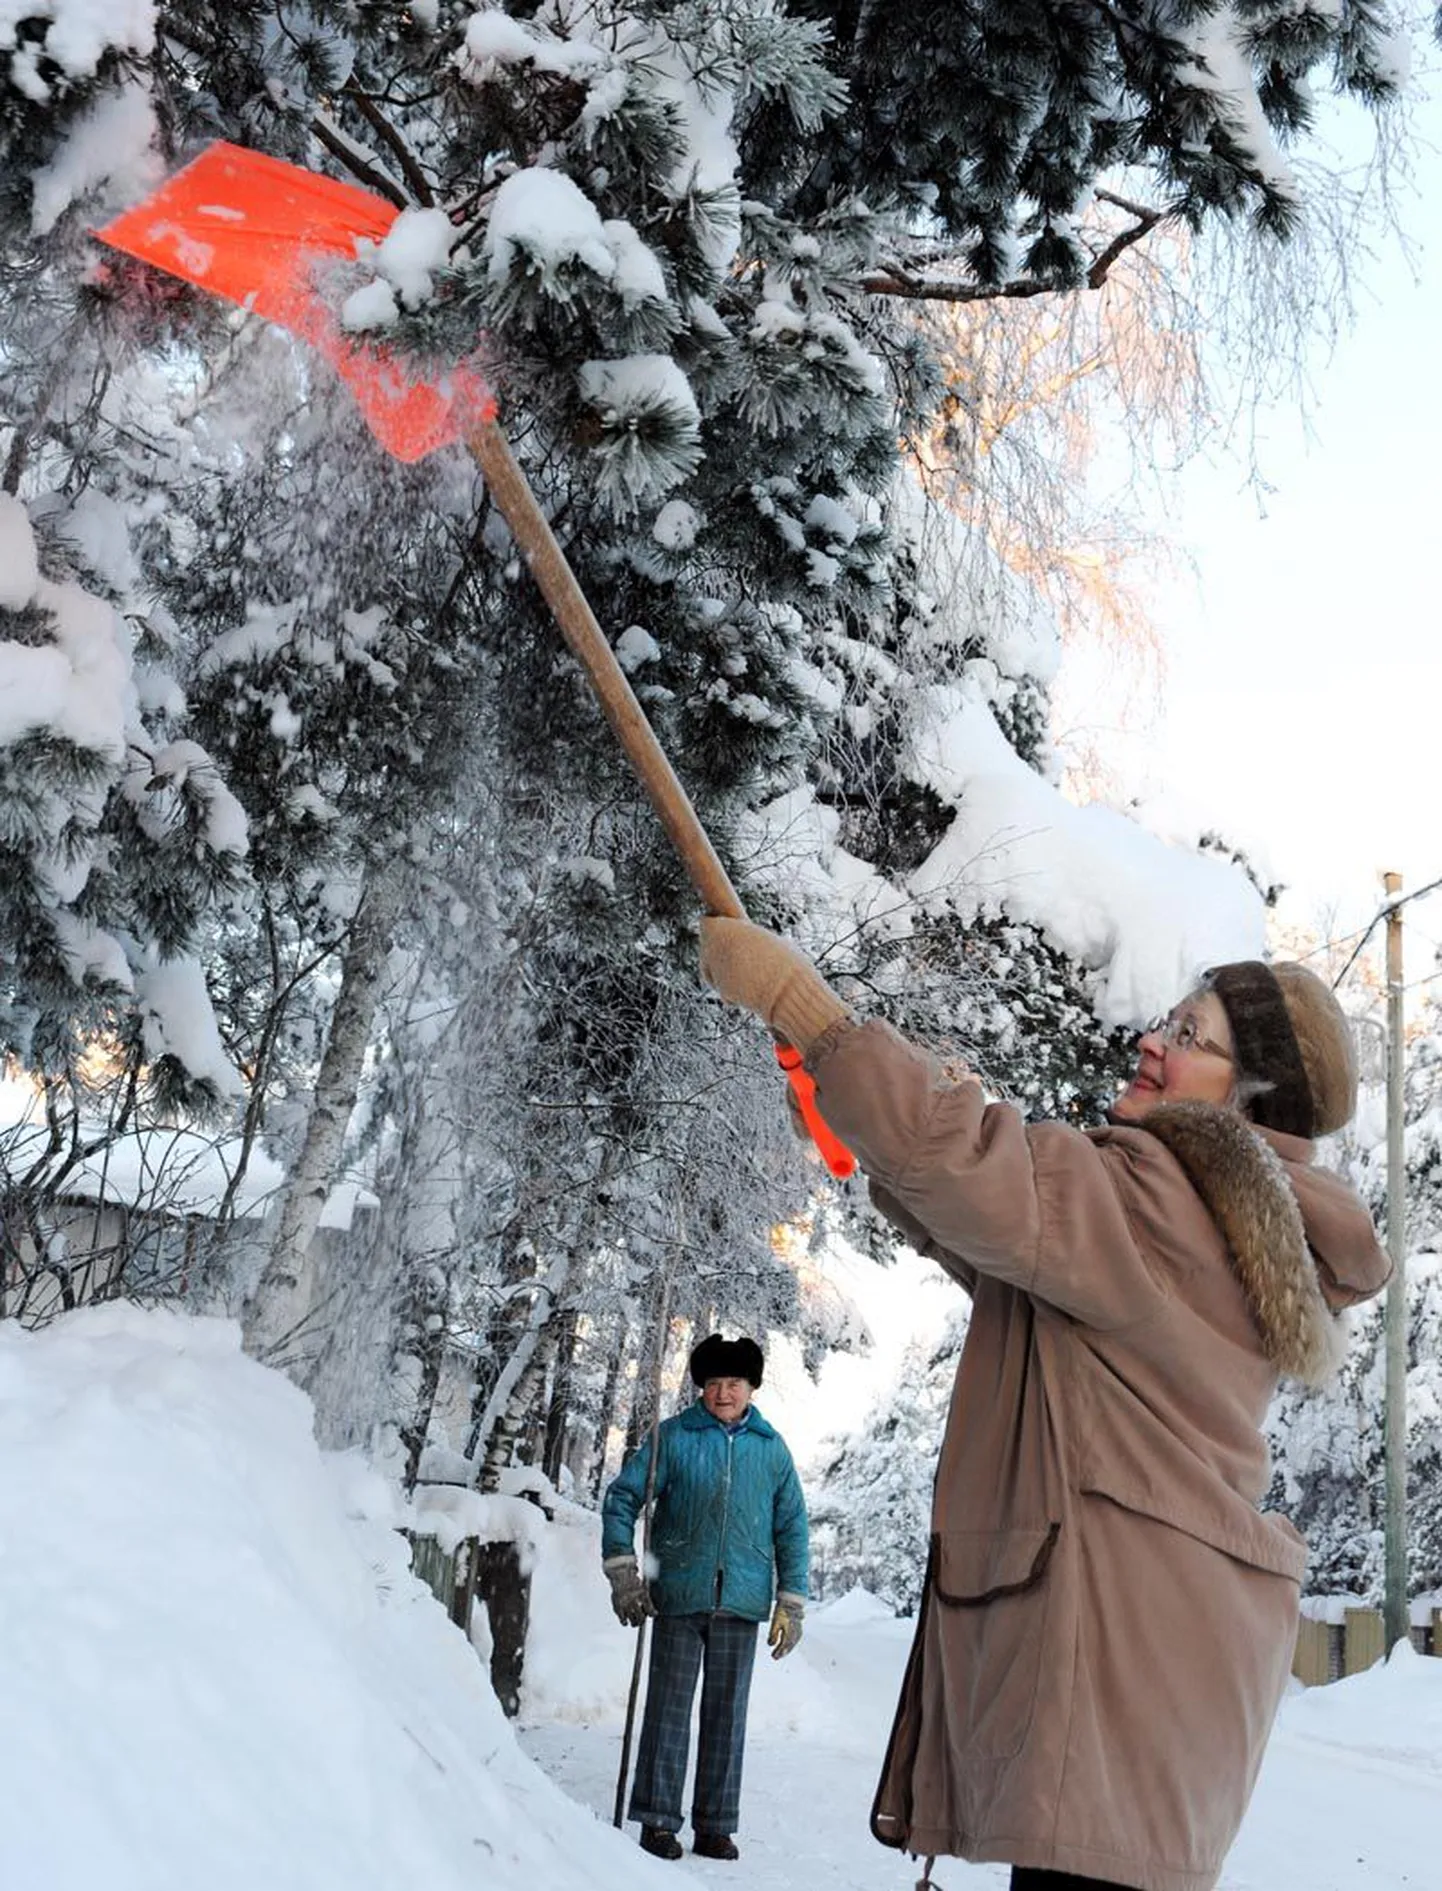 Nõmmel eile pildile jäänud 74-aastane Elisabete ja 78-aastane Hans polnud noorte ettevõtmisest midagi kuulnud. Mände hakkas vanapaar lumest vabaks raputama pärast seda, kui Eesti Energia oli nende kandis Ränduri tänaval oma liine puhastanud.